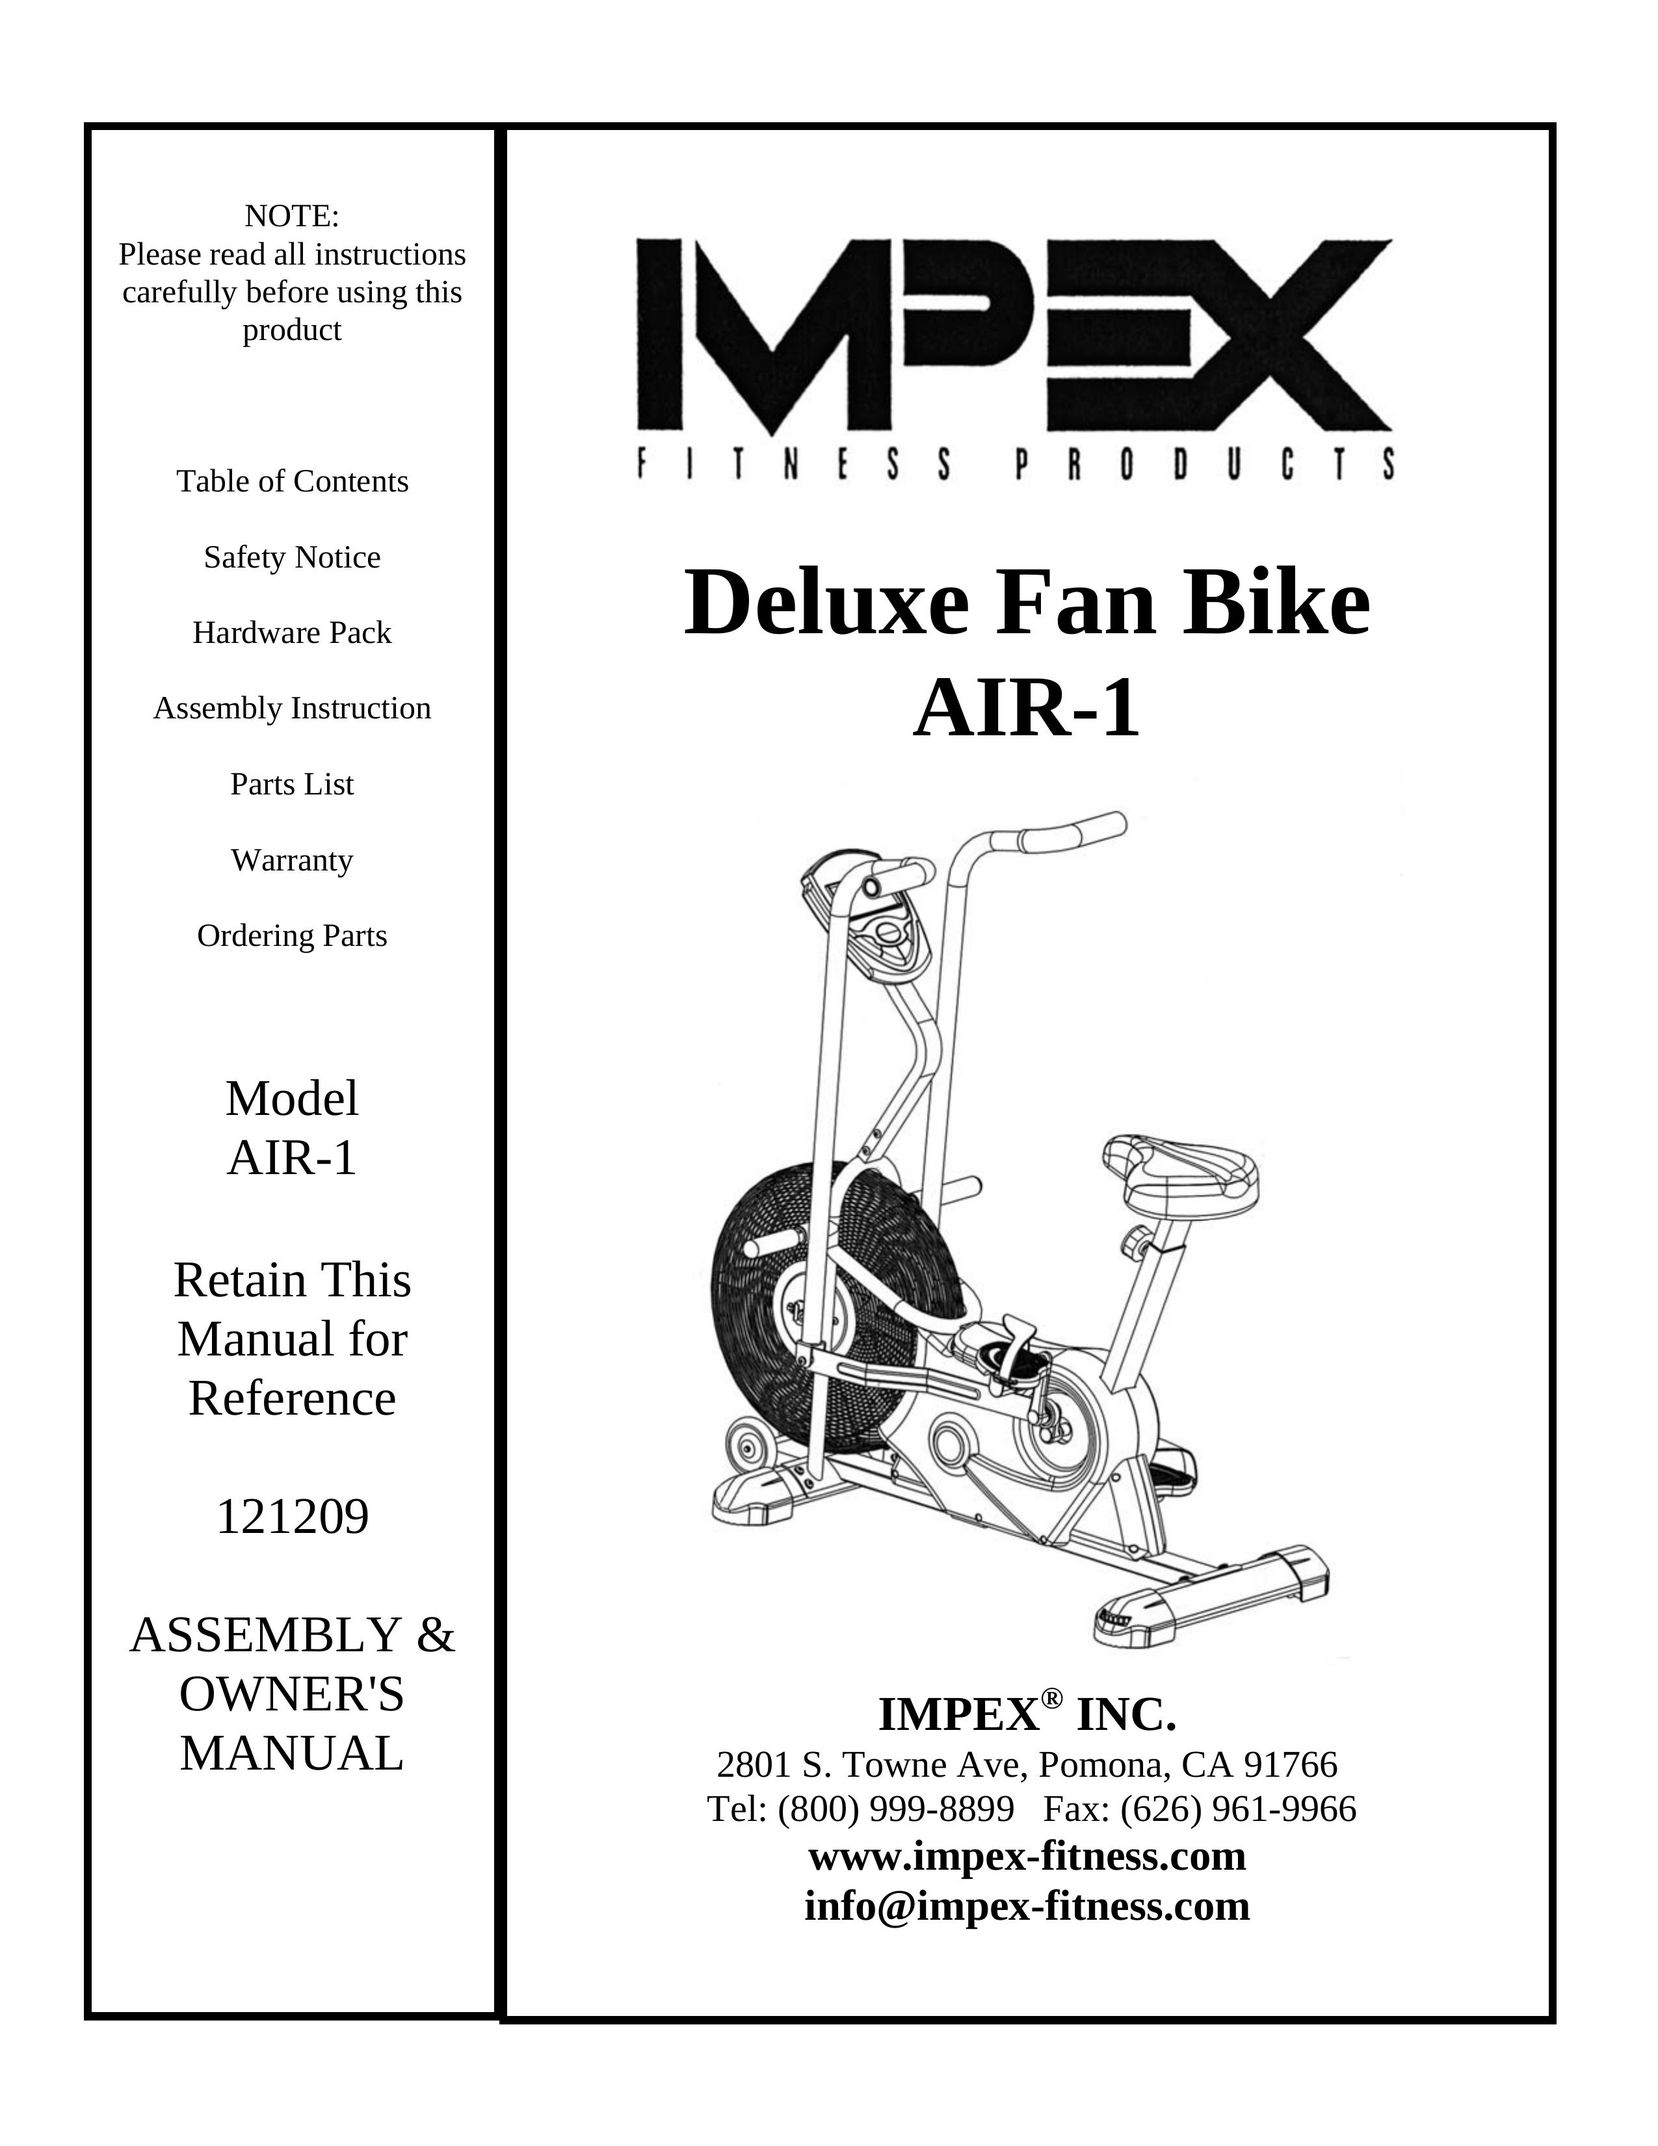 Impex AIR-1 Exercise Bike User Manual